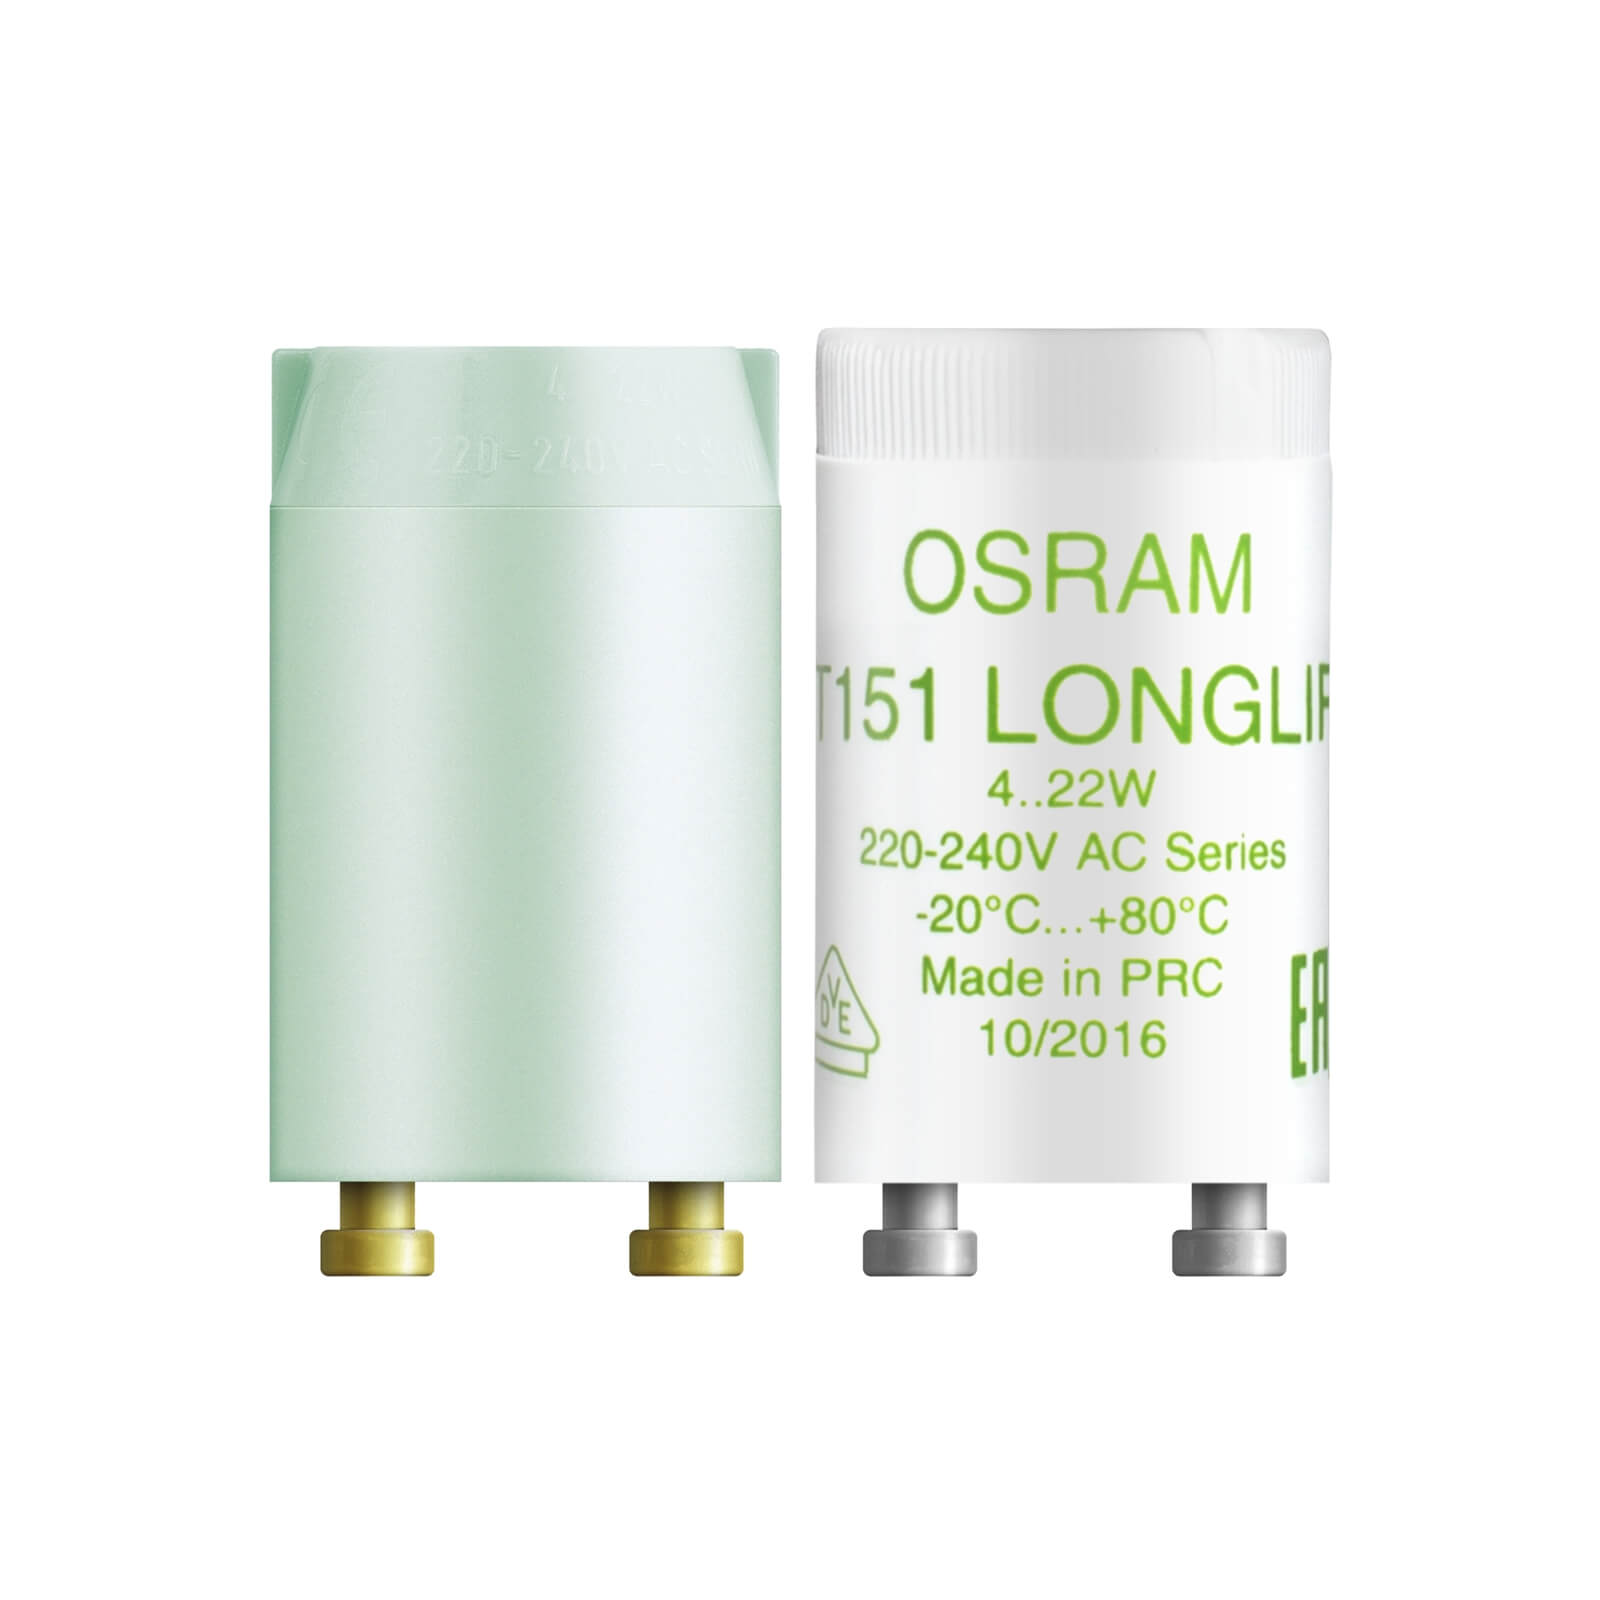 Photo of Osram Integrated Starter 22w Light Bulb - 2 Pack